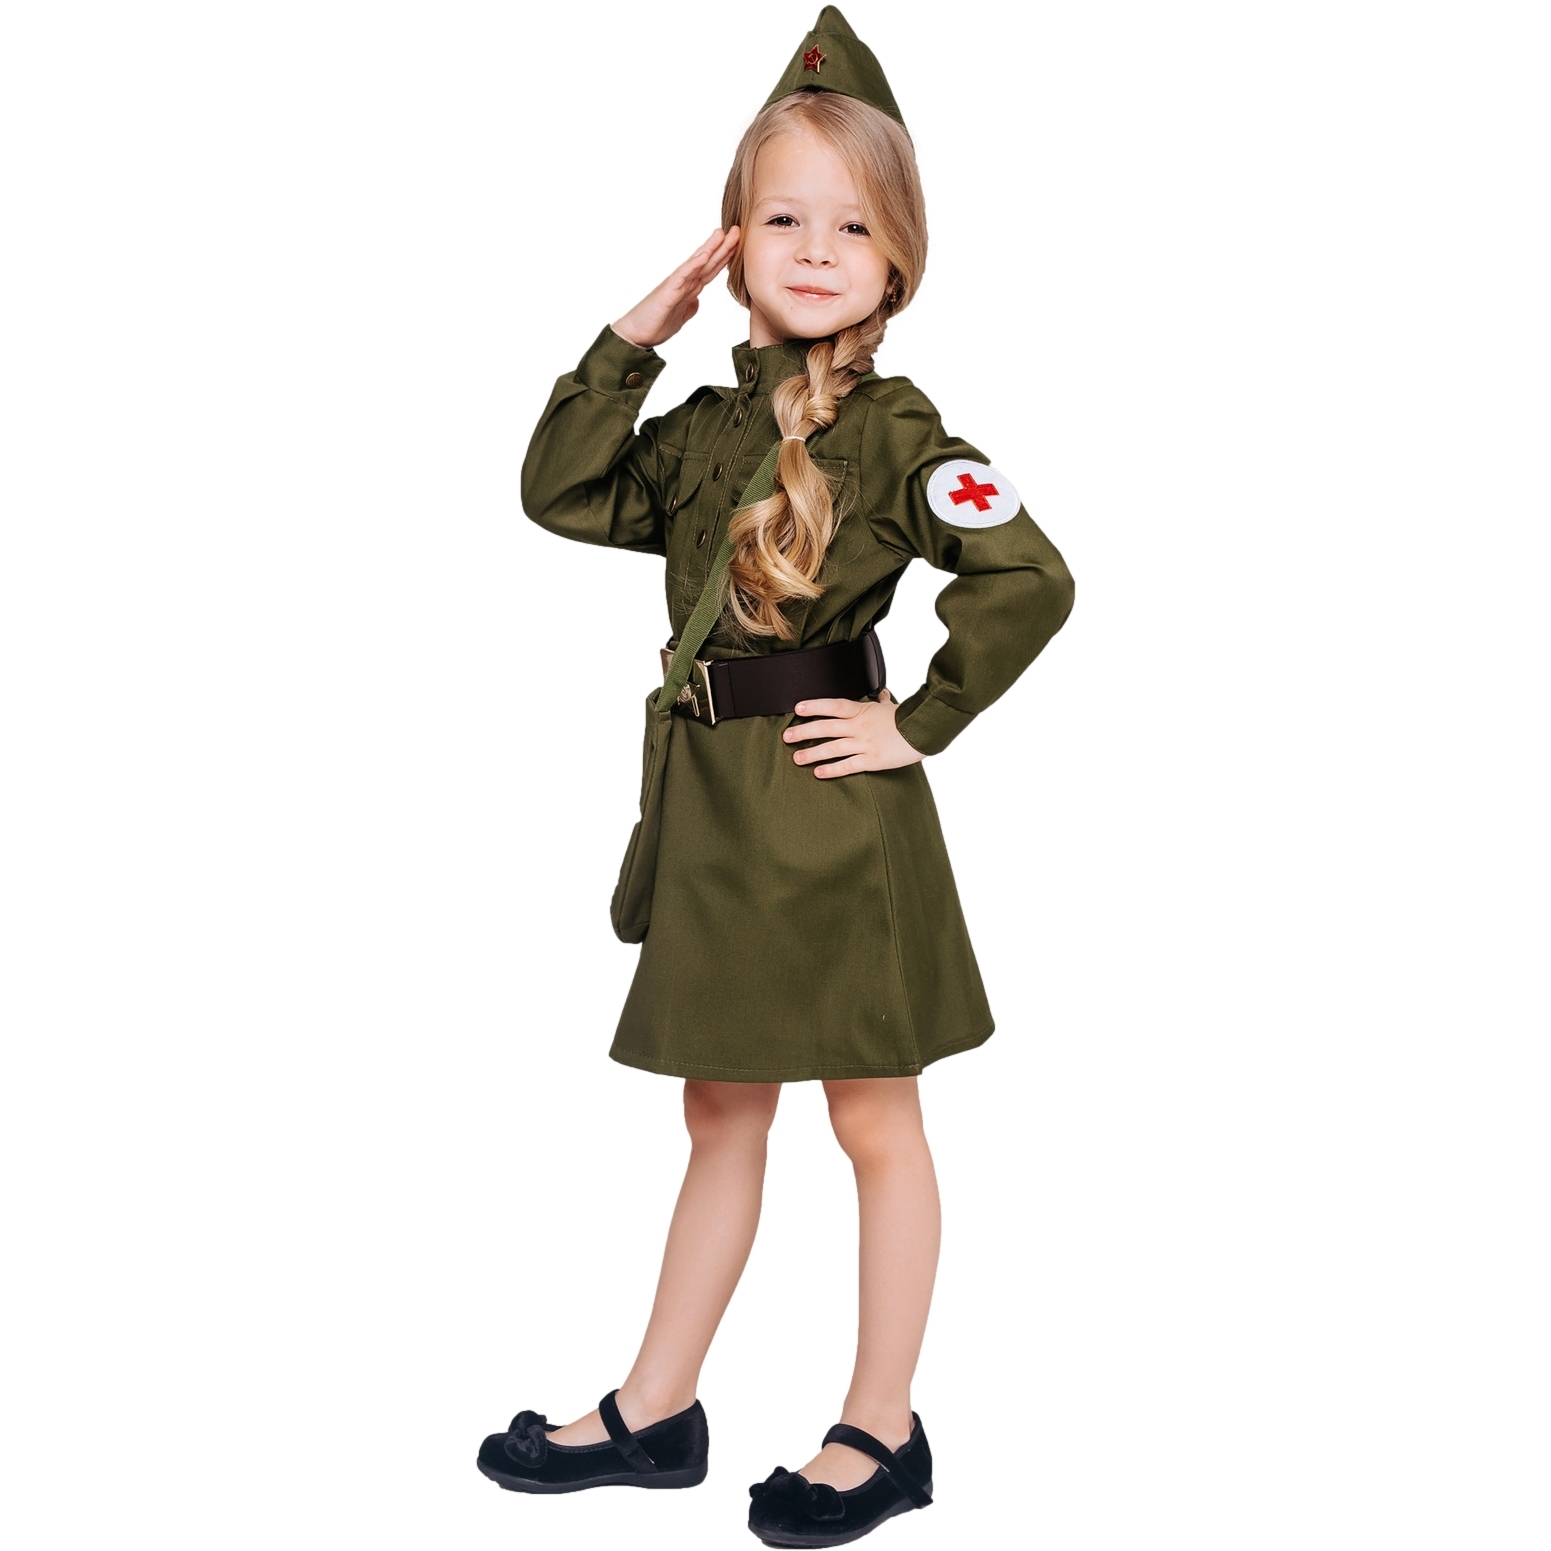 Карнавальный костюм "военная медсестра" (гимнастерка, юбка, пилотка, ремень, сумка) размер 128-64